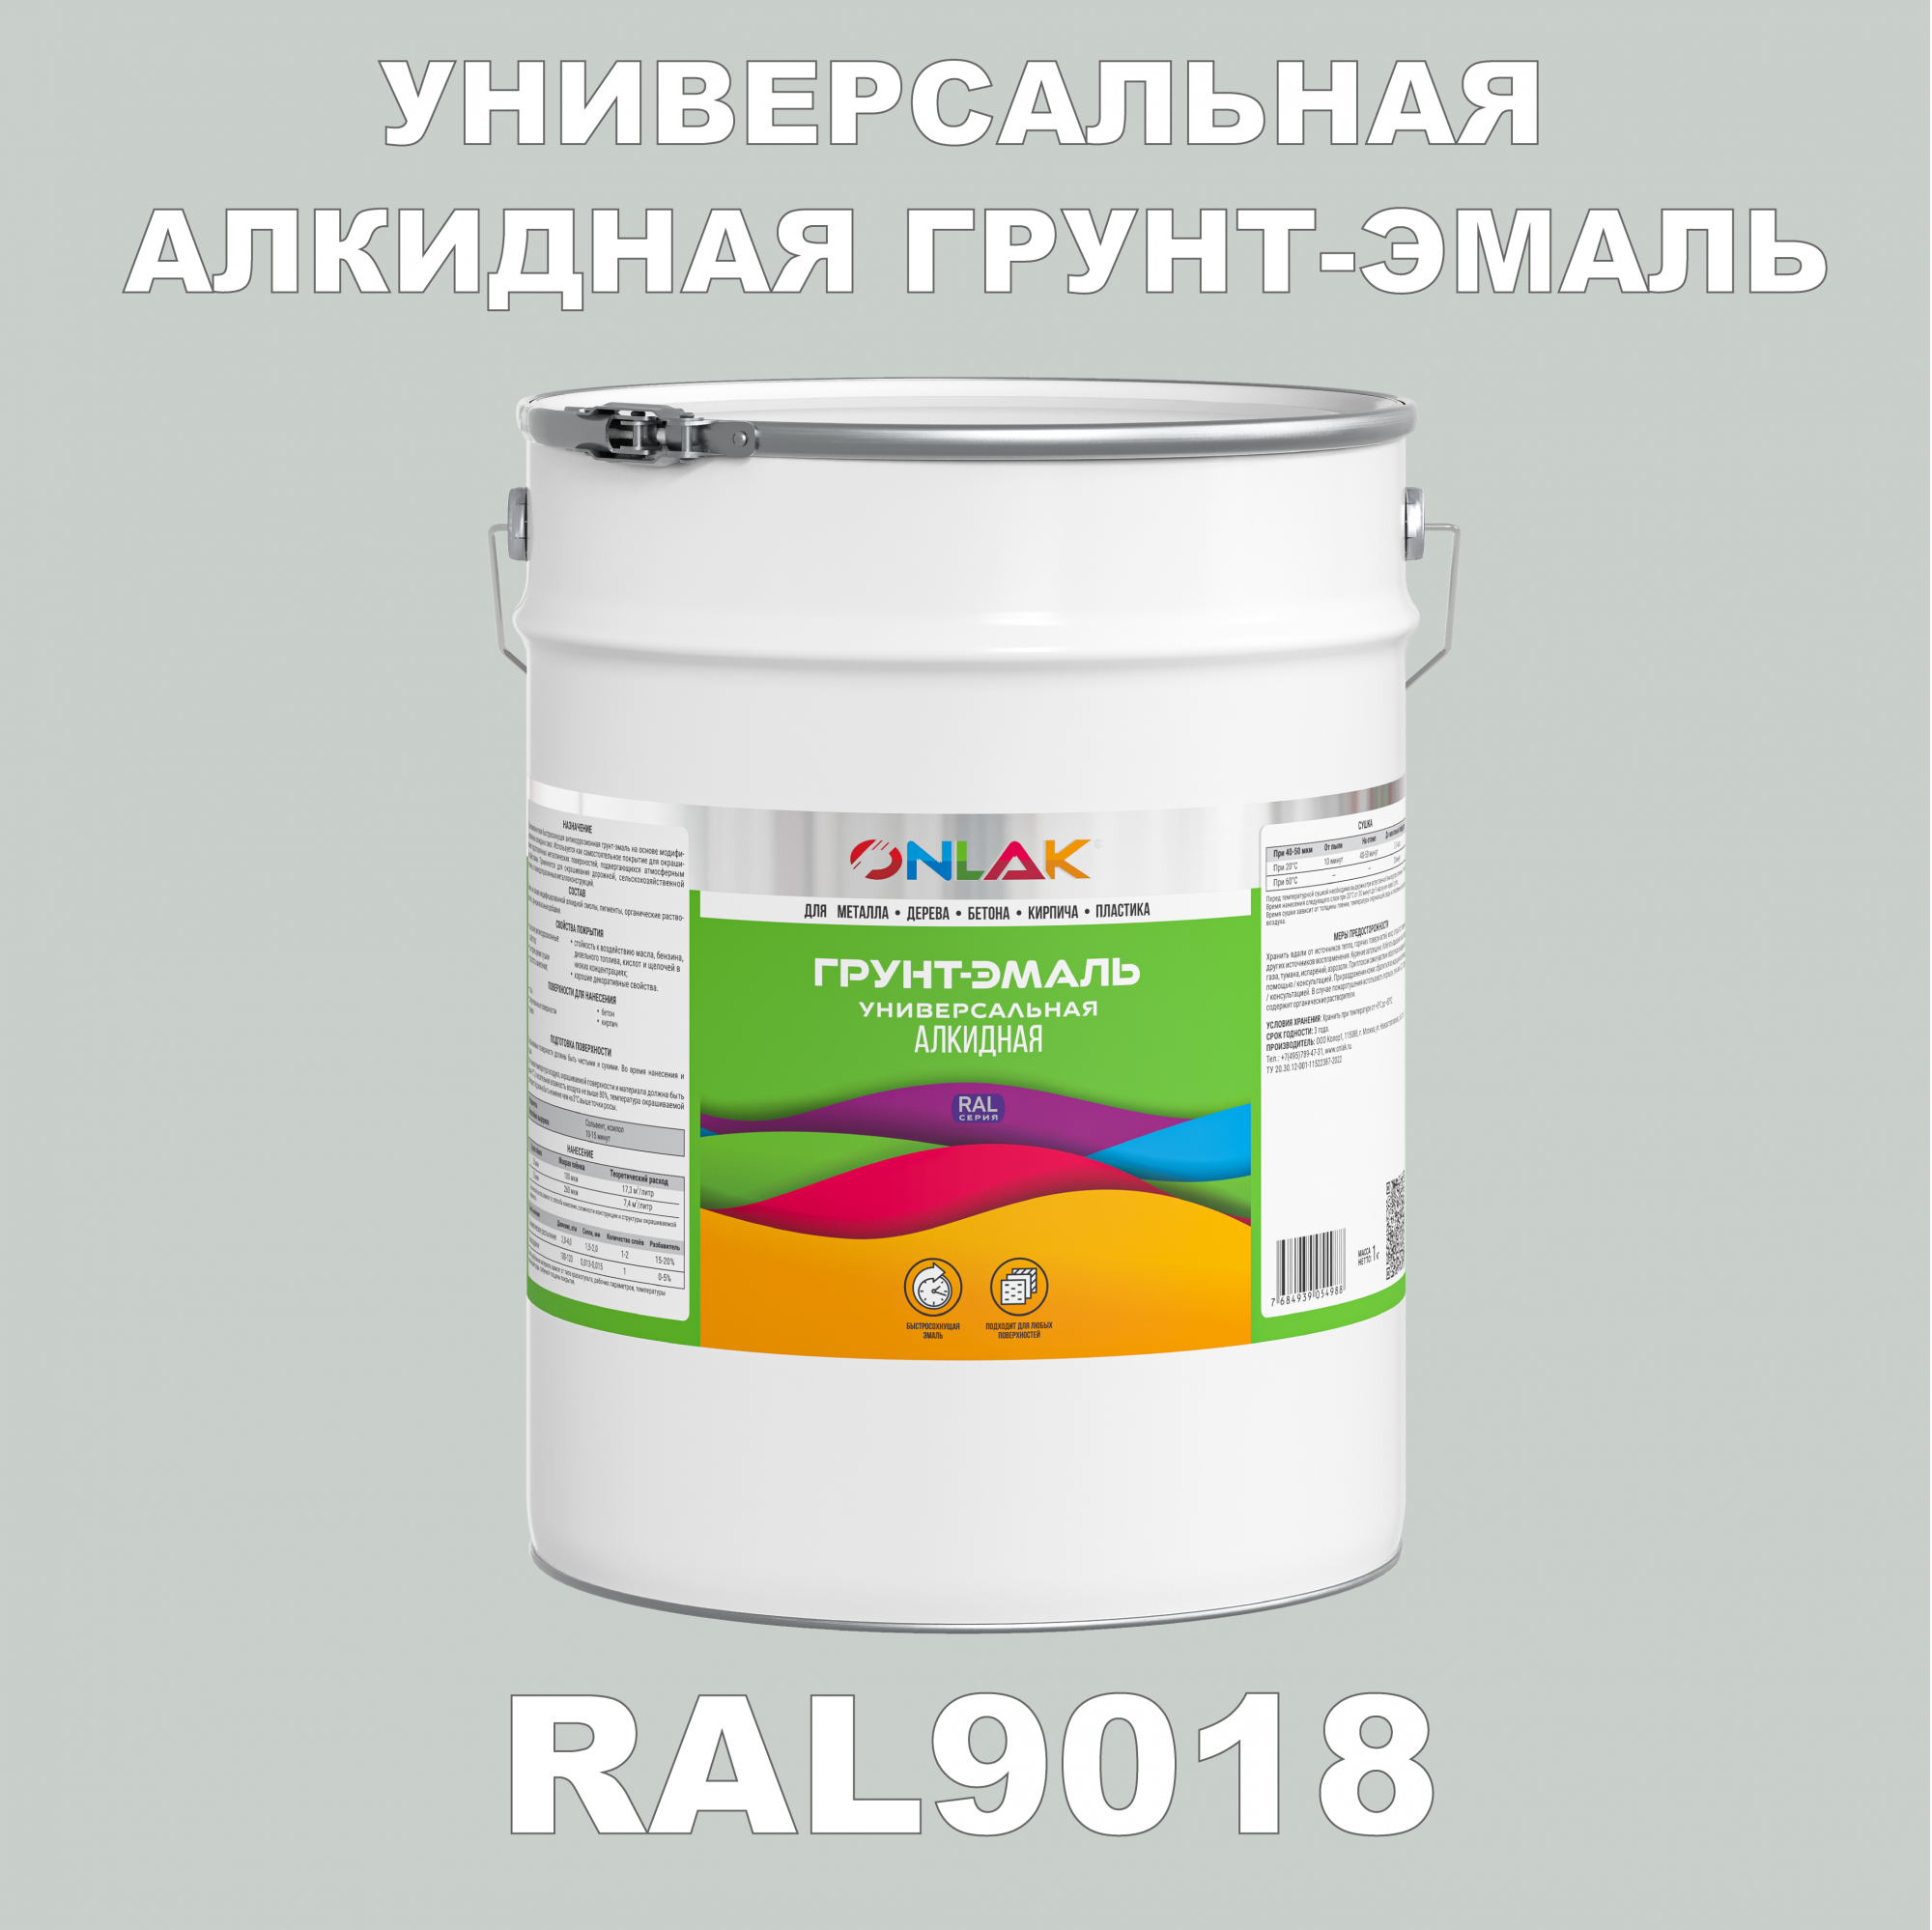 Грунт-эмаль ONLAK 1К RAL9018 антикоррозионная алкидная по металлу по ржавчине 20 кг грунт эмаль skladno по ржавчине алкидная желтая 1 8 кг